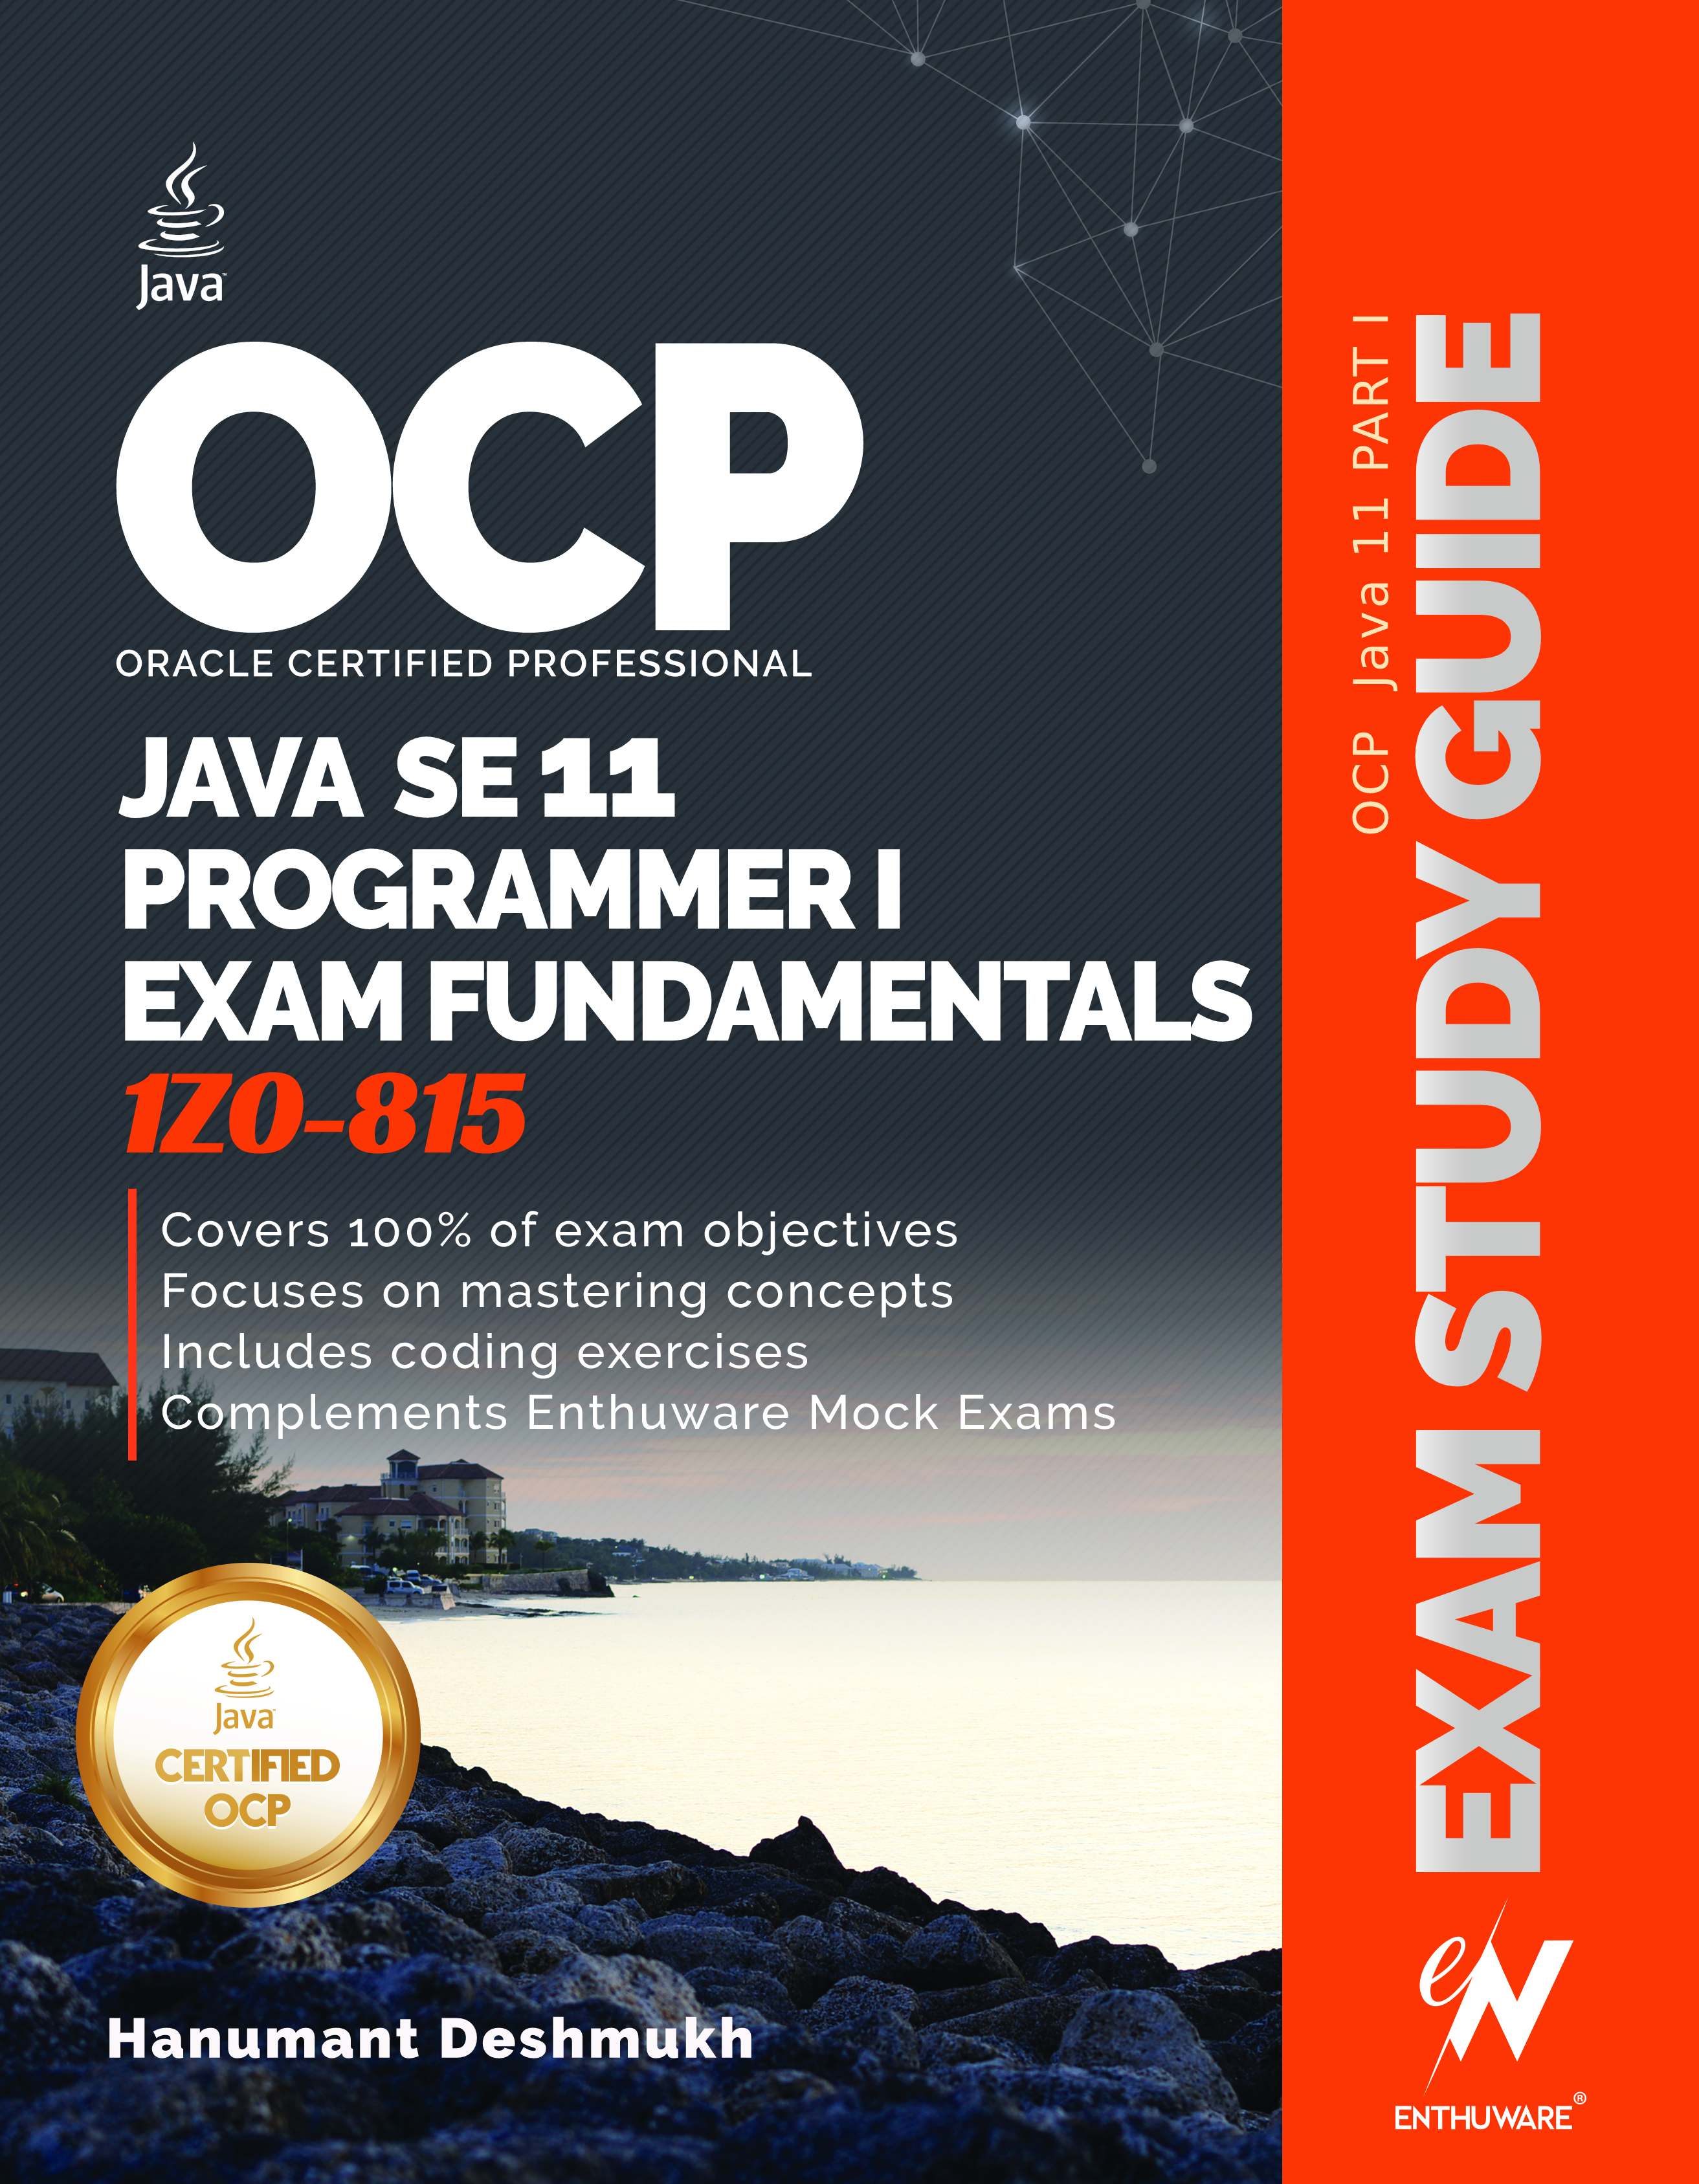 OCP Java 11 1Z0-815 exam experience